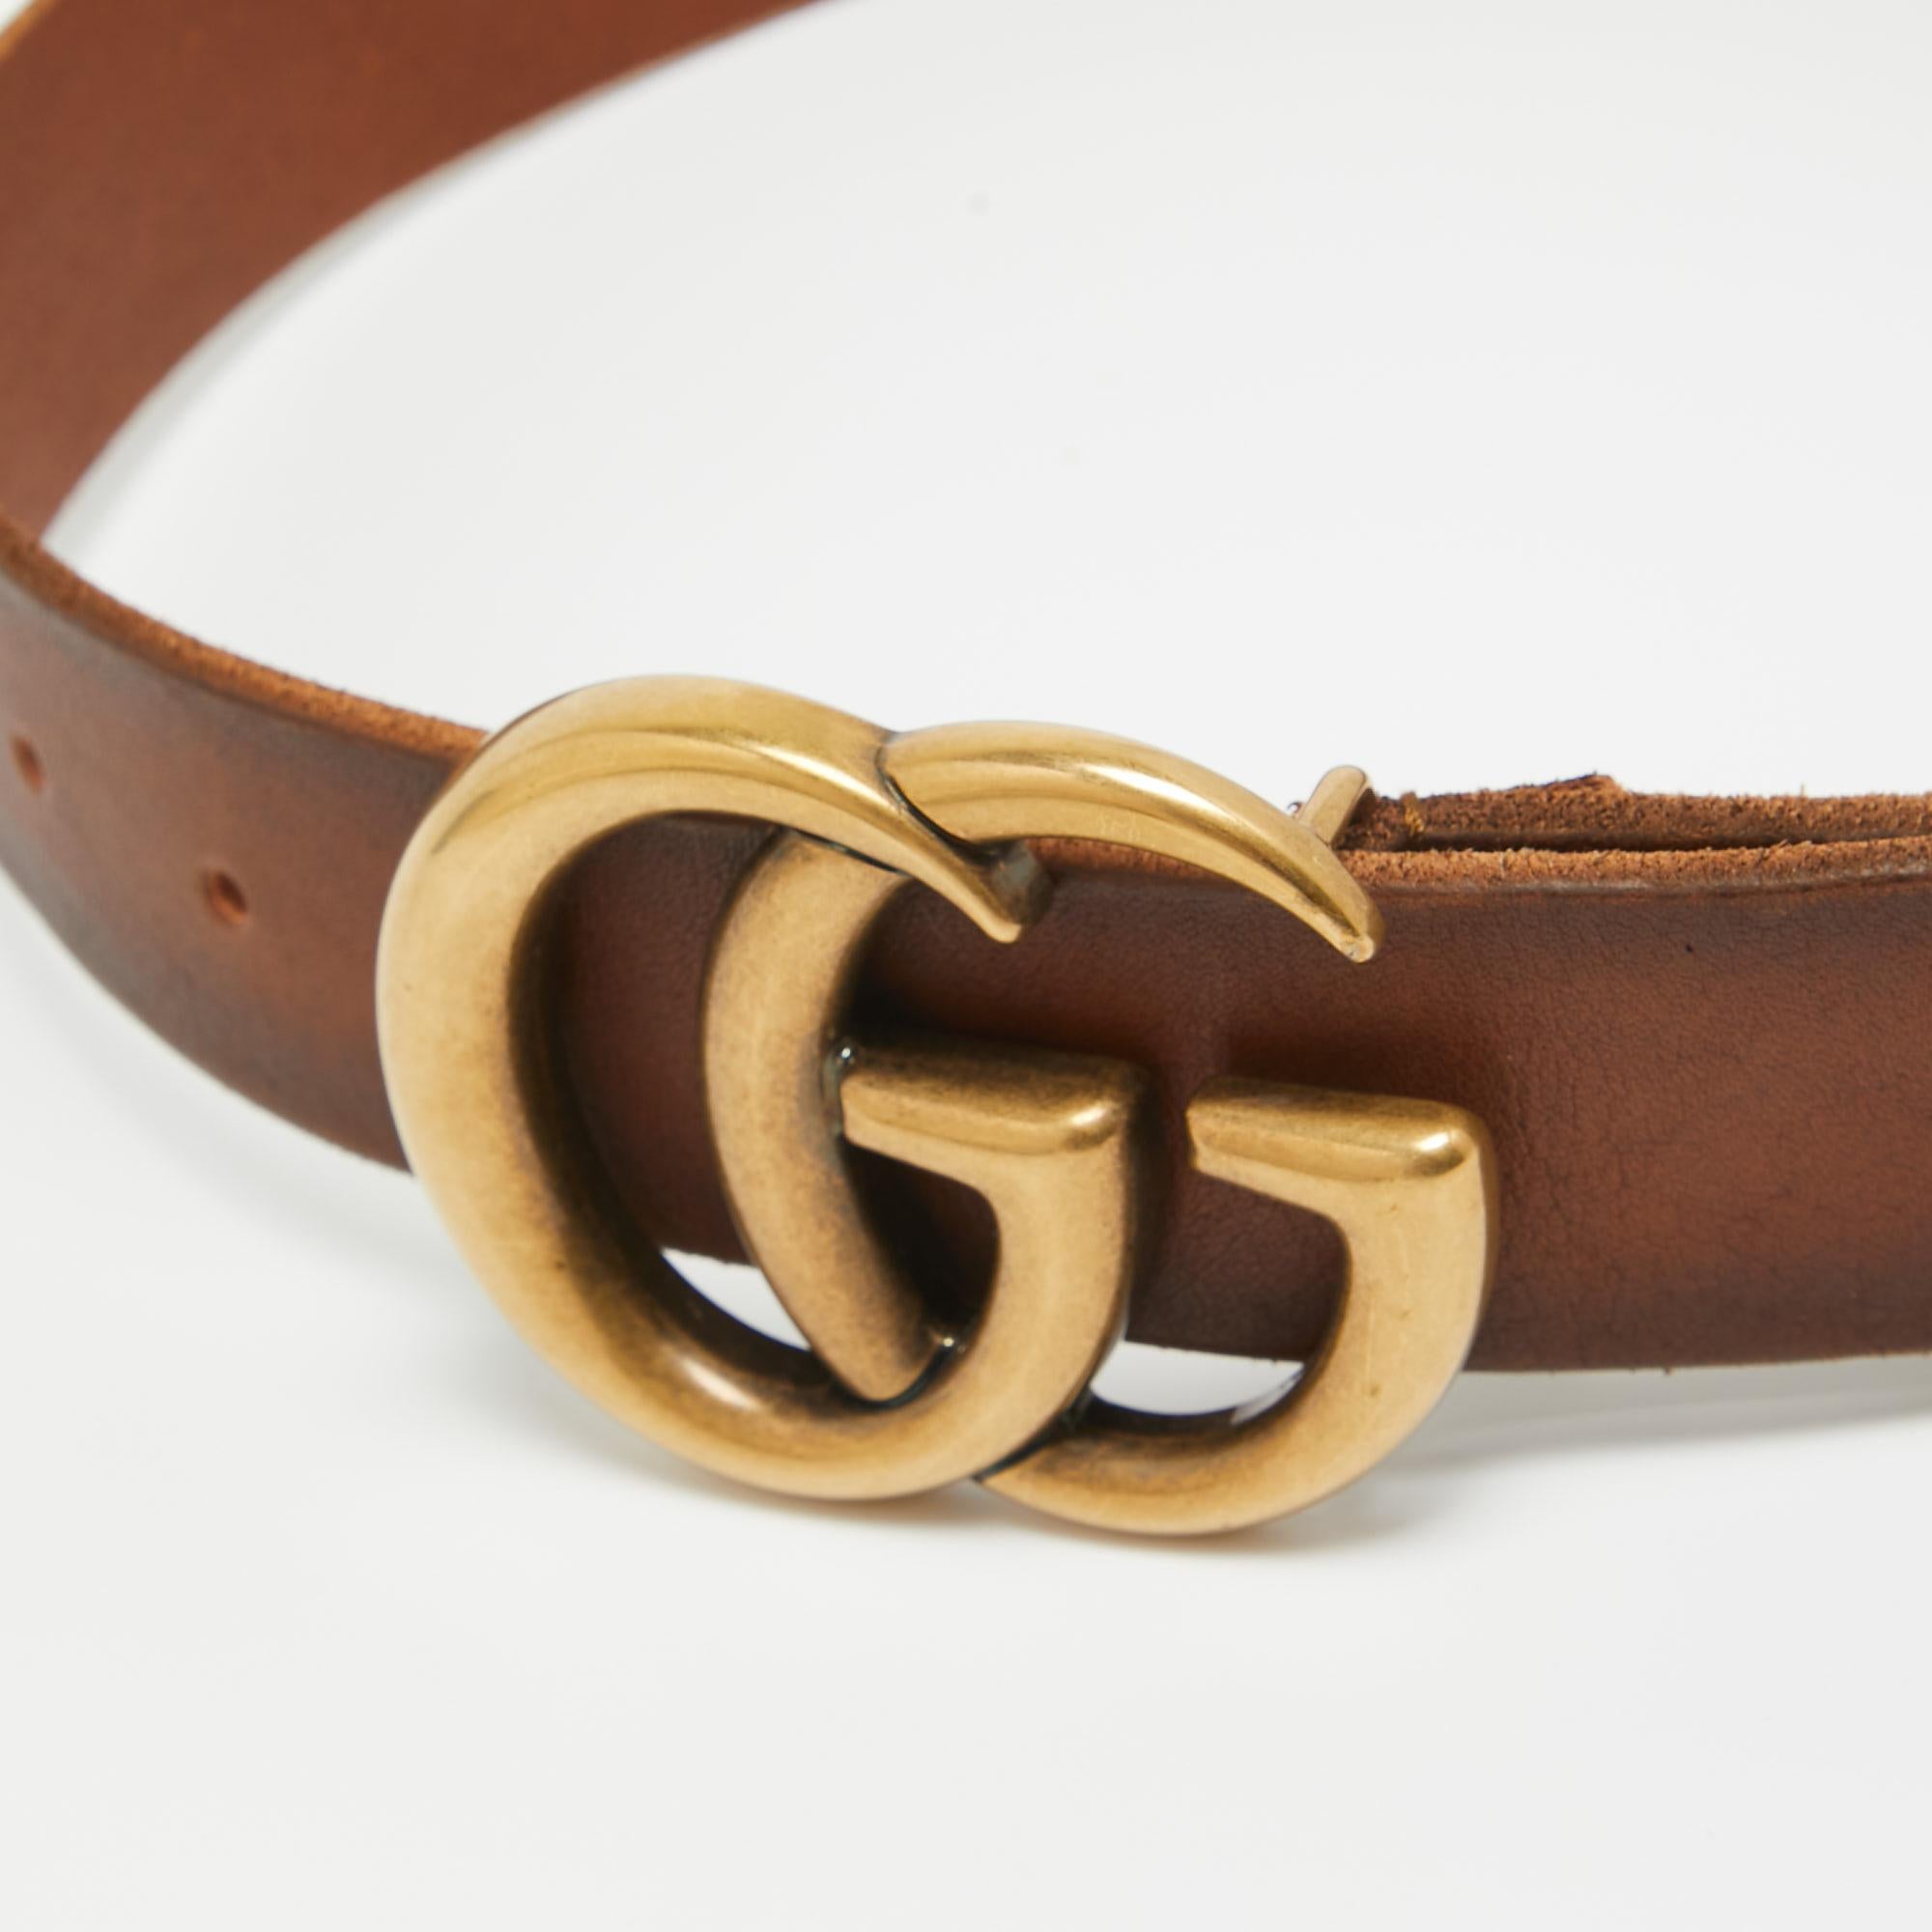 Les ceintures sont toujours une bonne option à ajouter à votre collection. Cette ceinture de Gucci vous permettra d'élever votre style d'un cran. Il est fabriqué en cuir et doté d'une double boucle G.

